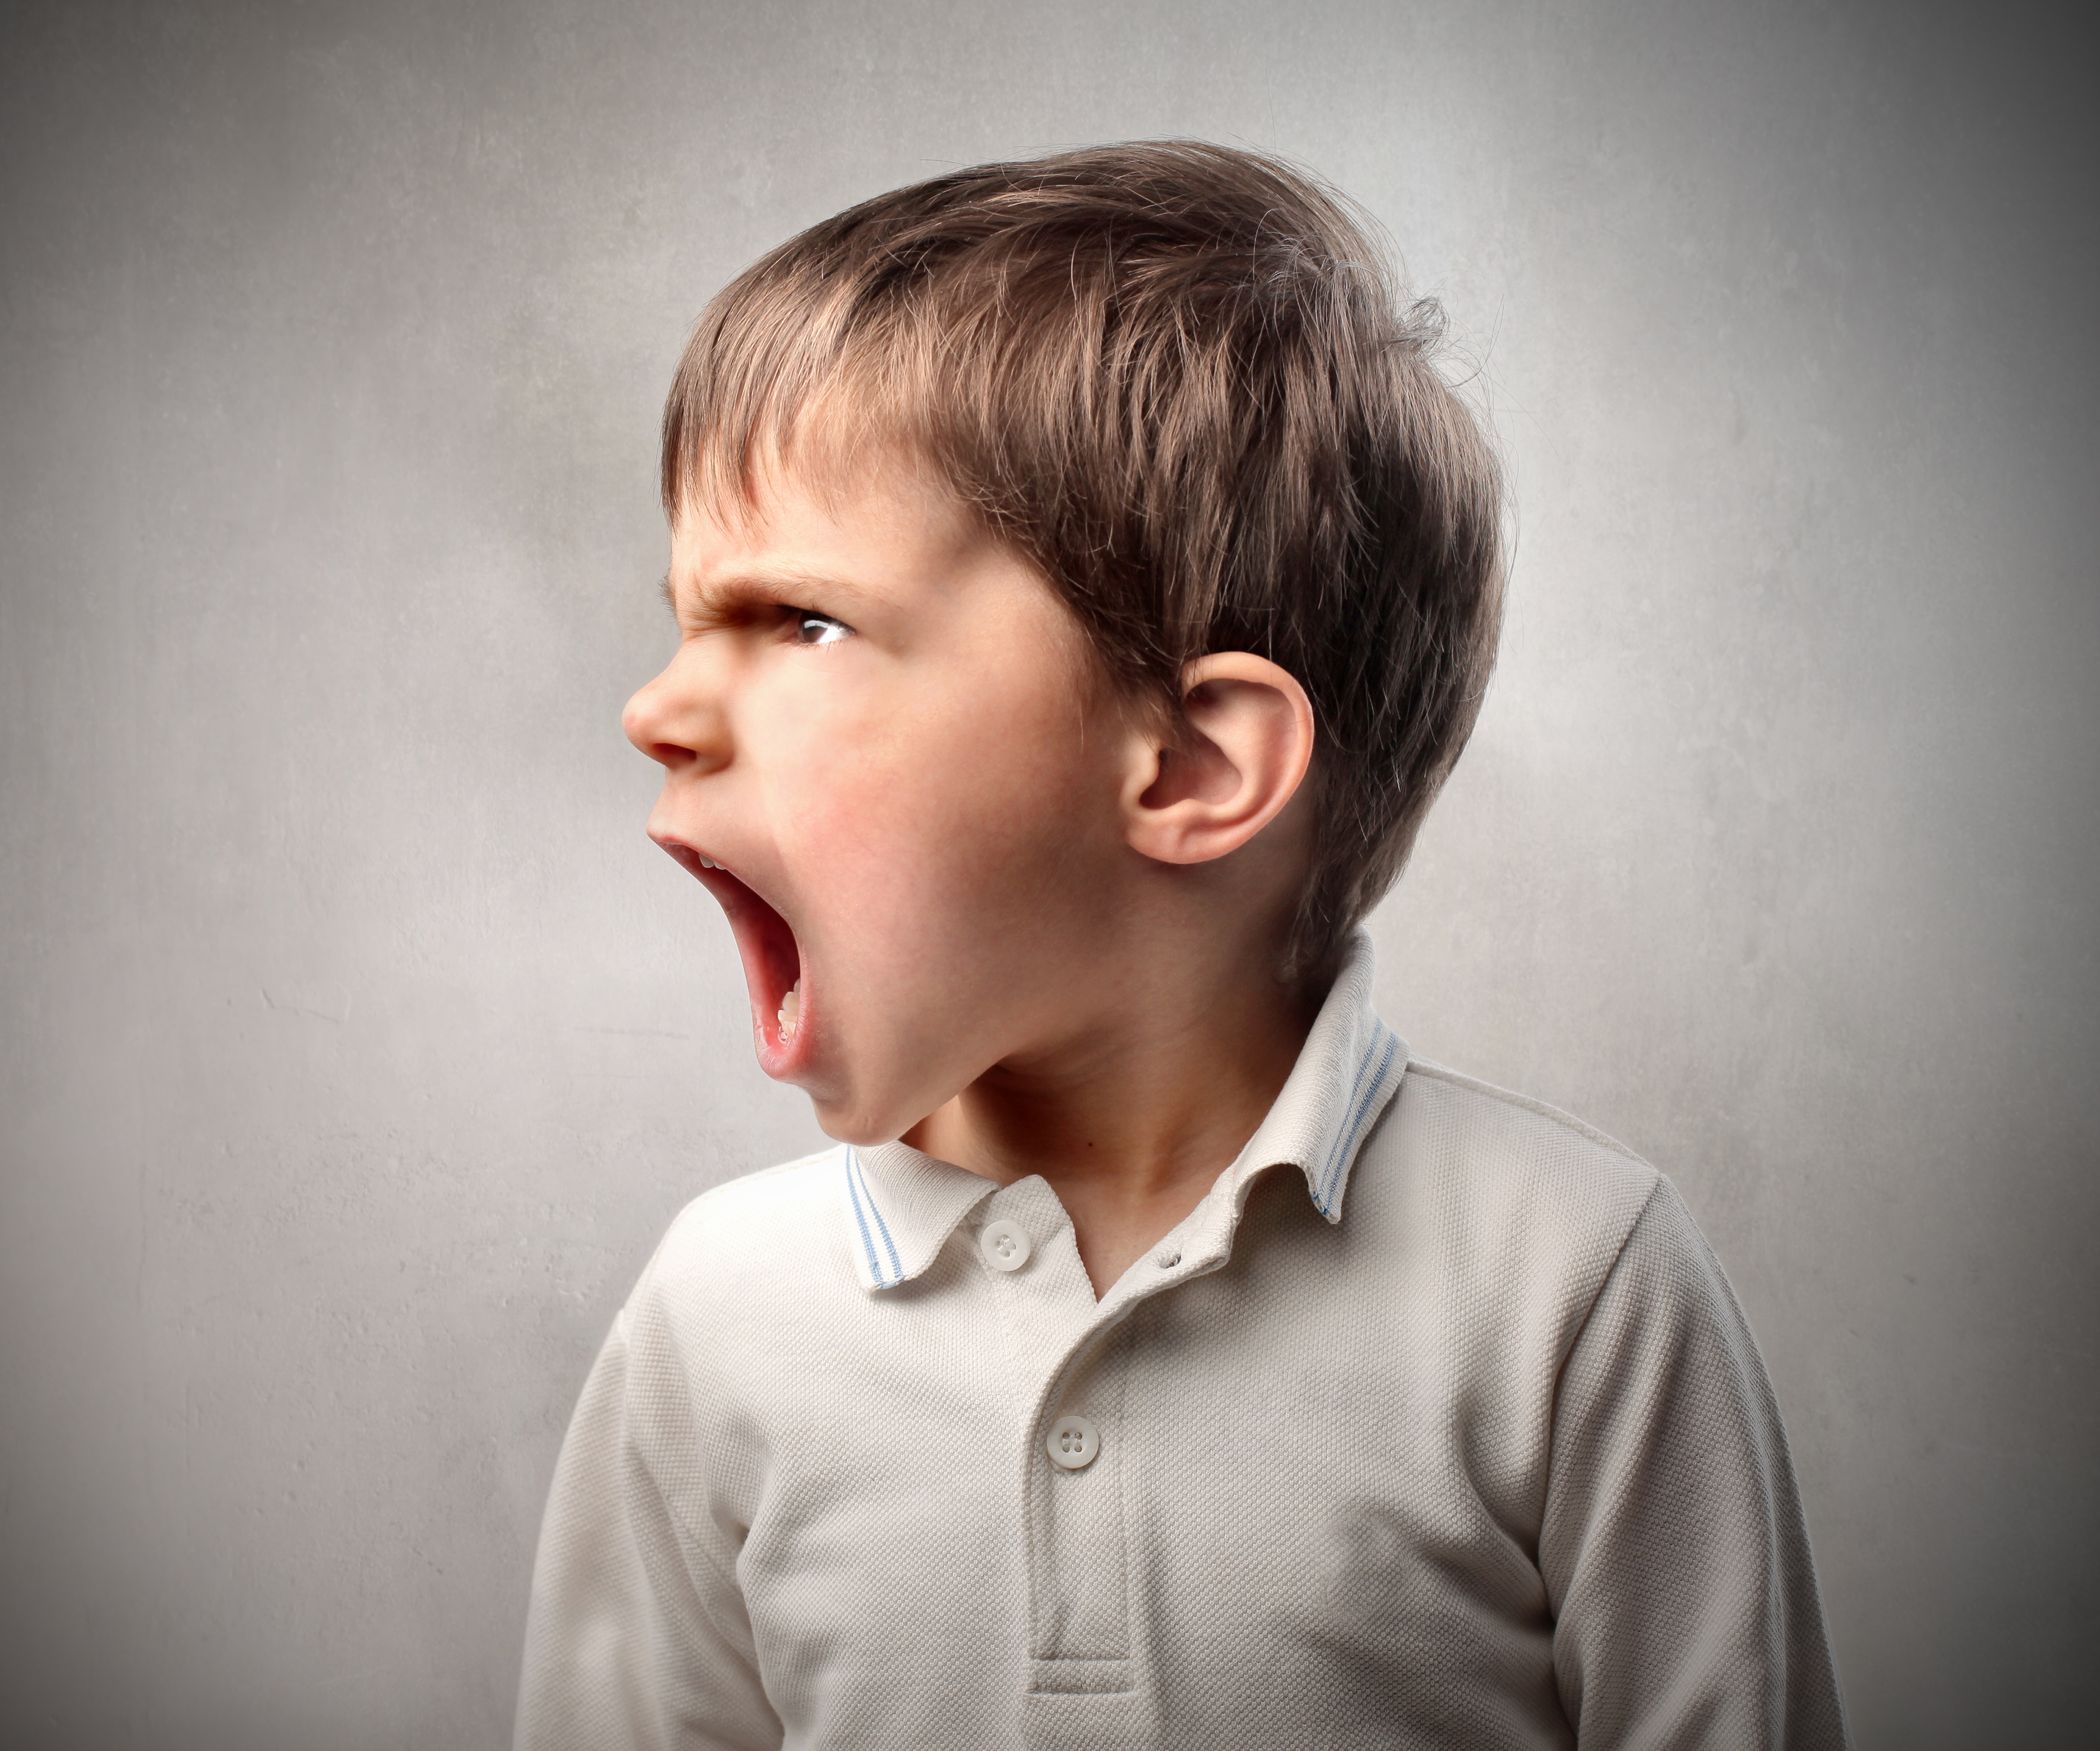 Los niños con Síndrome del Emperador suelen recurrir a los gritos, berrinches y agresión física para llamar la atención y tener lo que desean. (Foto Prensa Libre: shutterstock). 